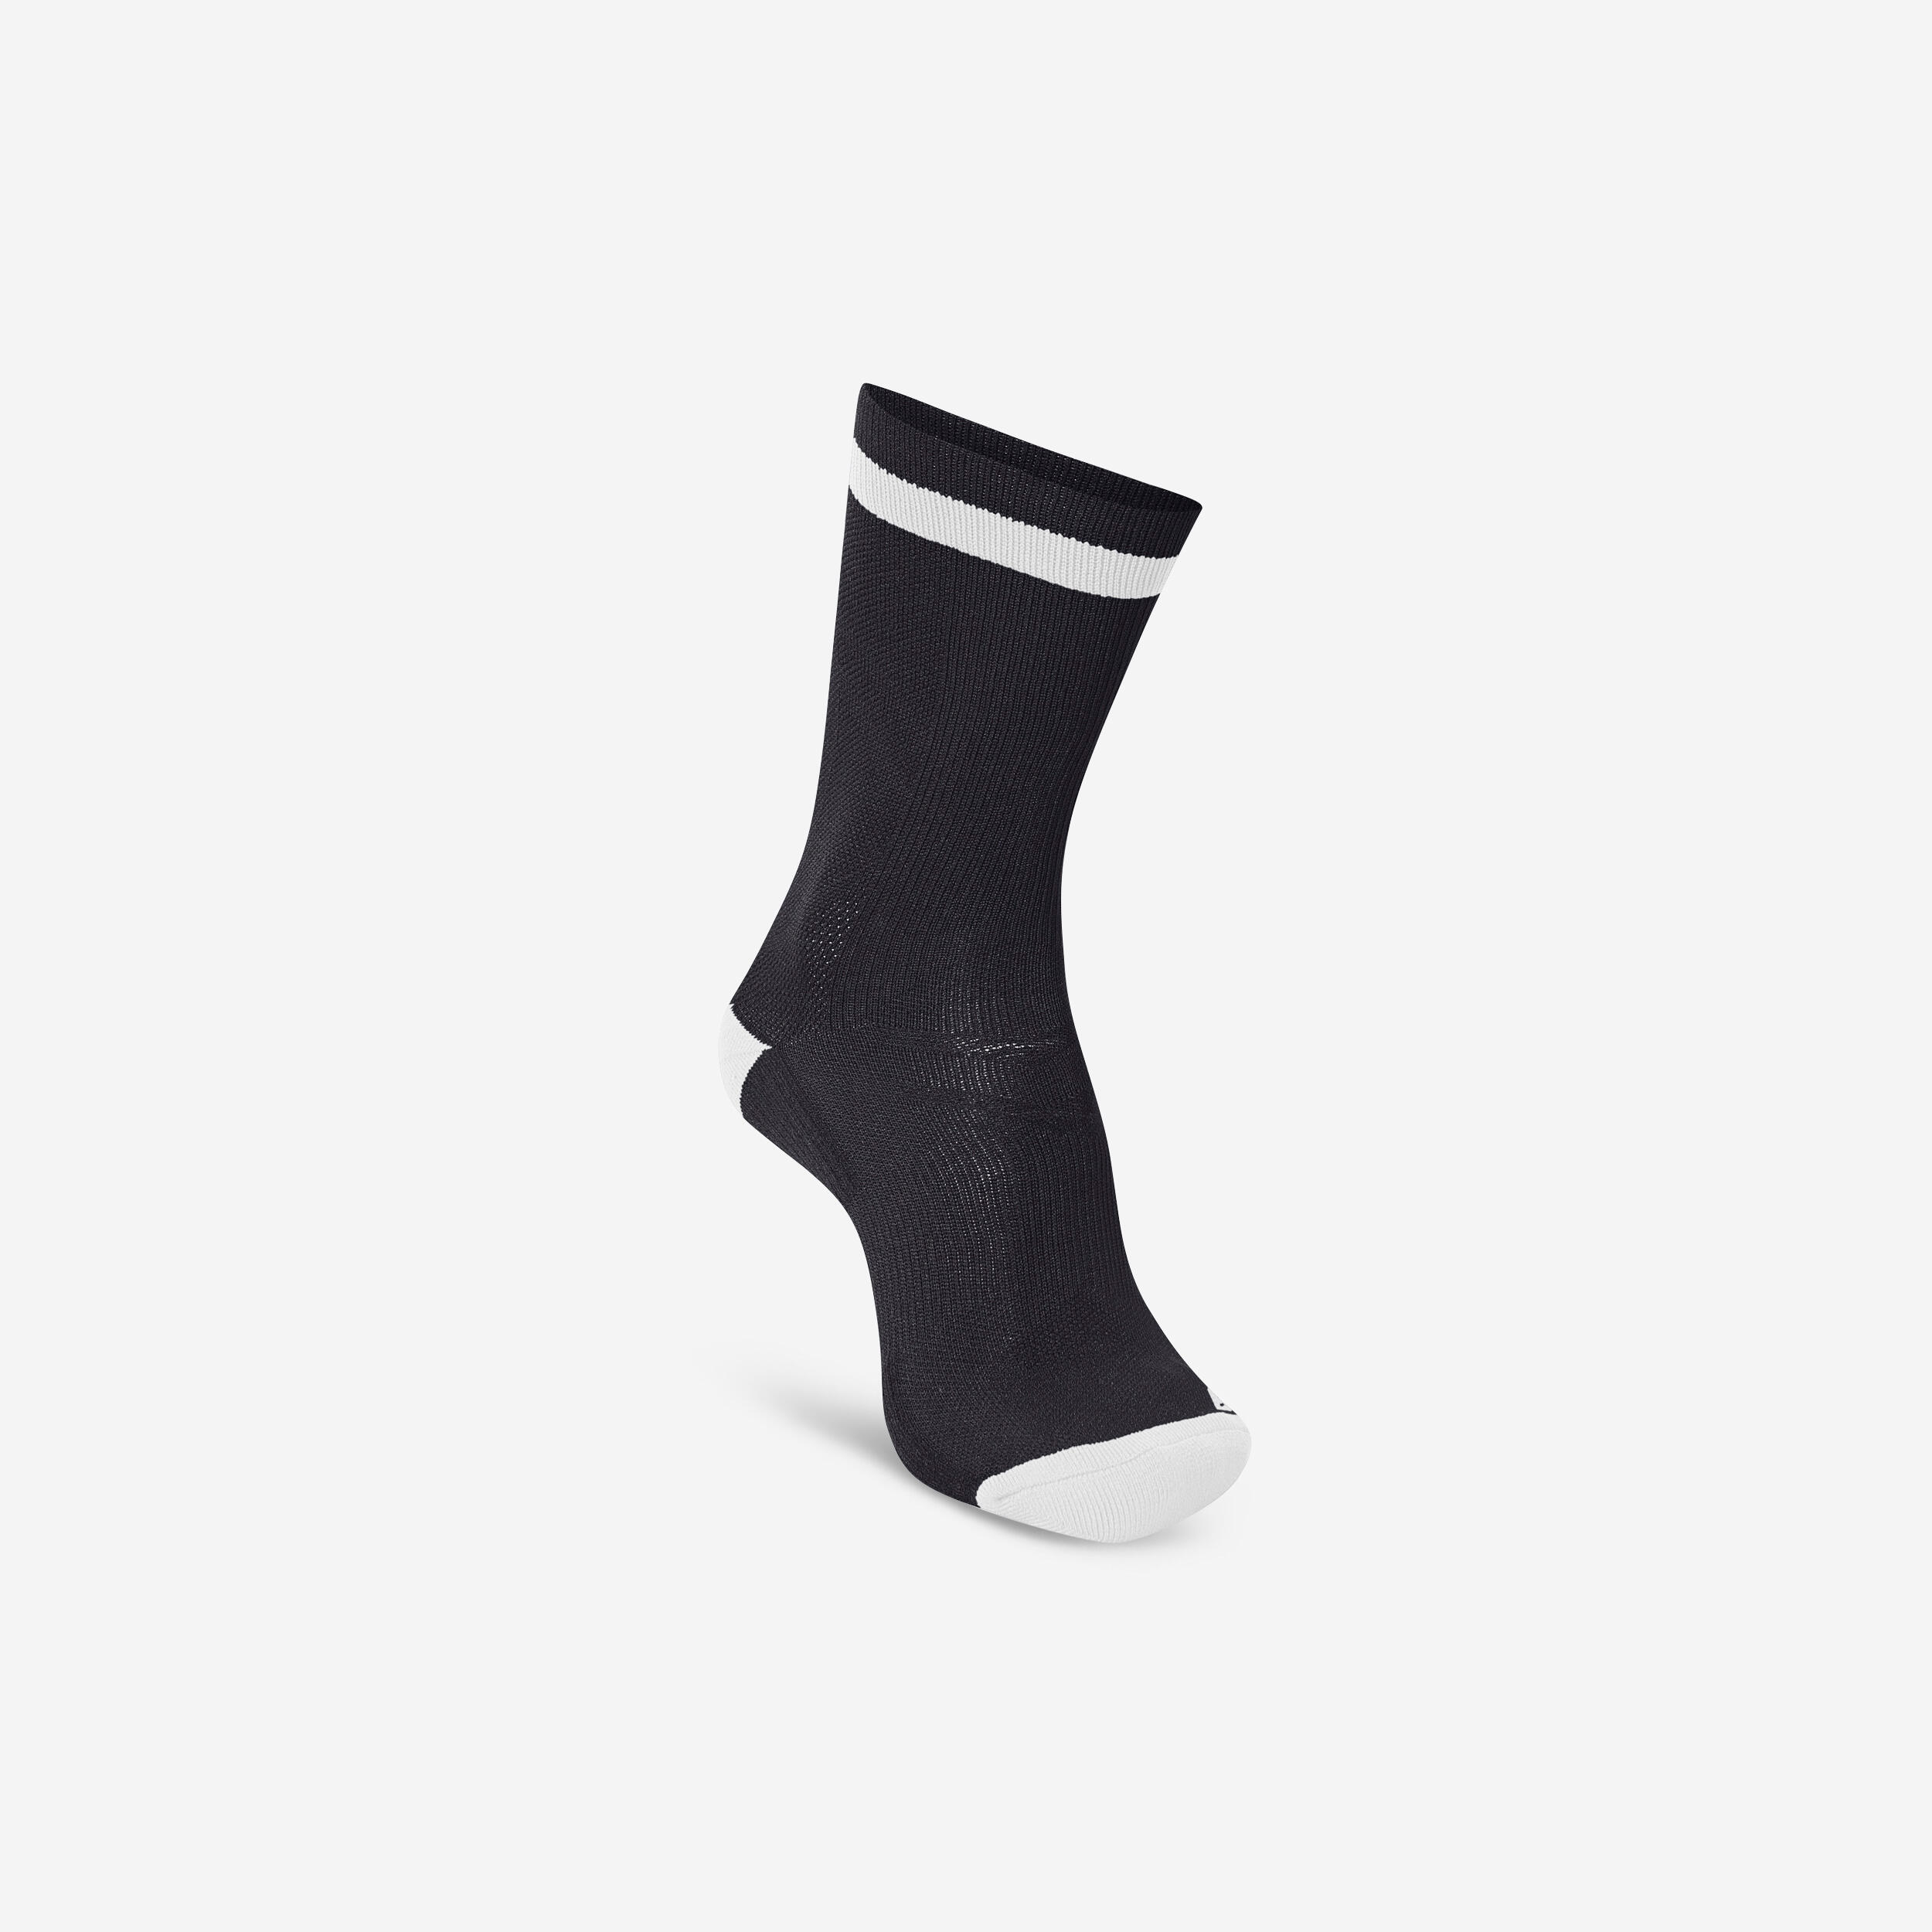 Hummel Adult Handball Socks Elite Single-pack - Black/white